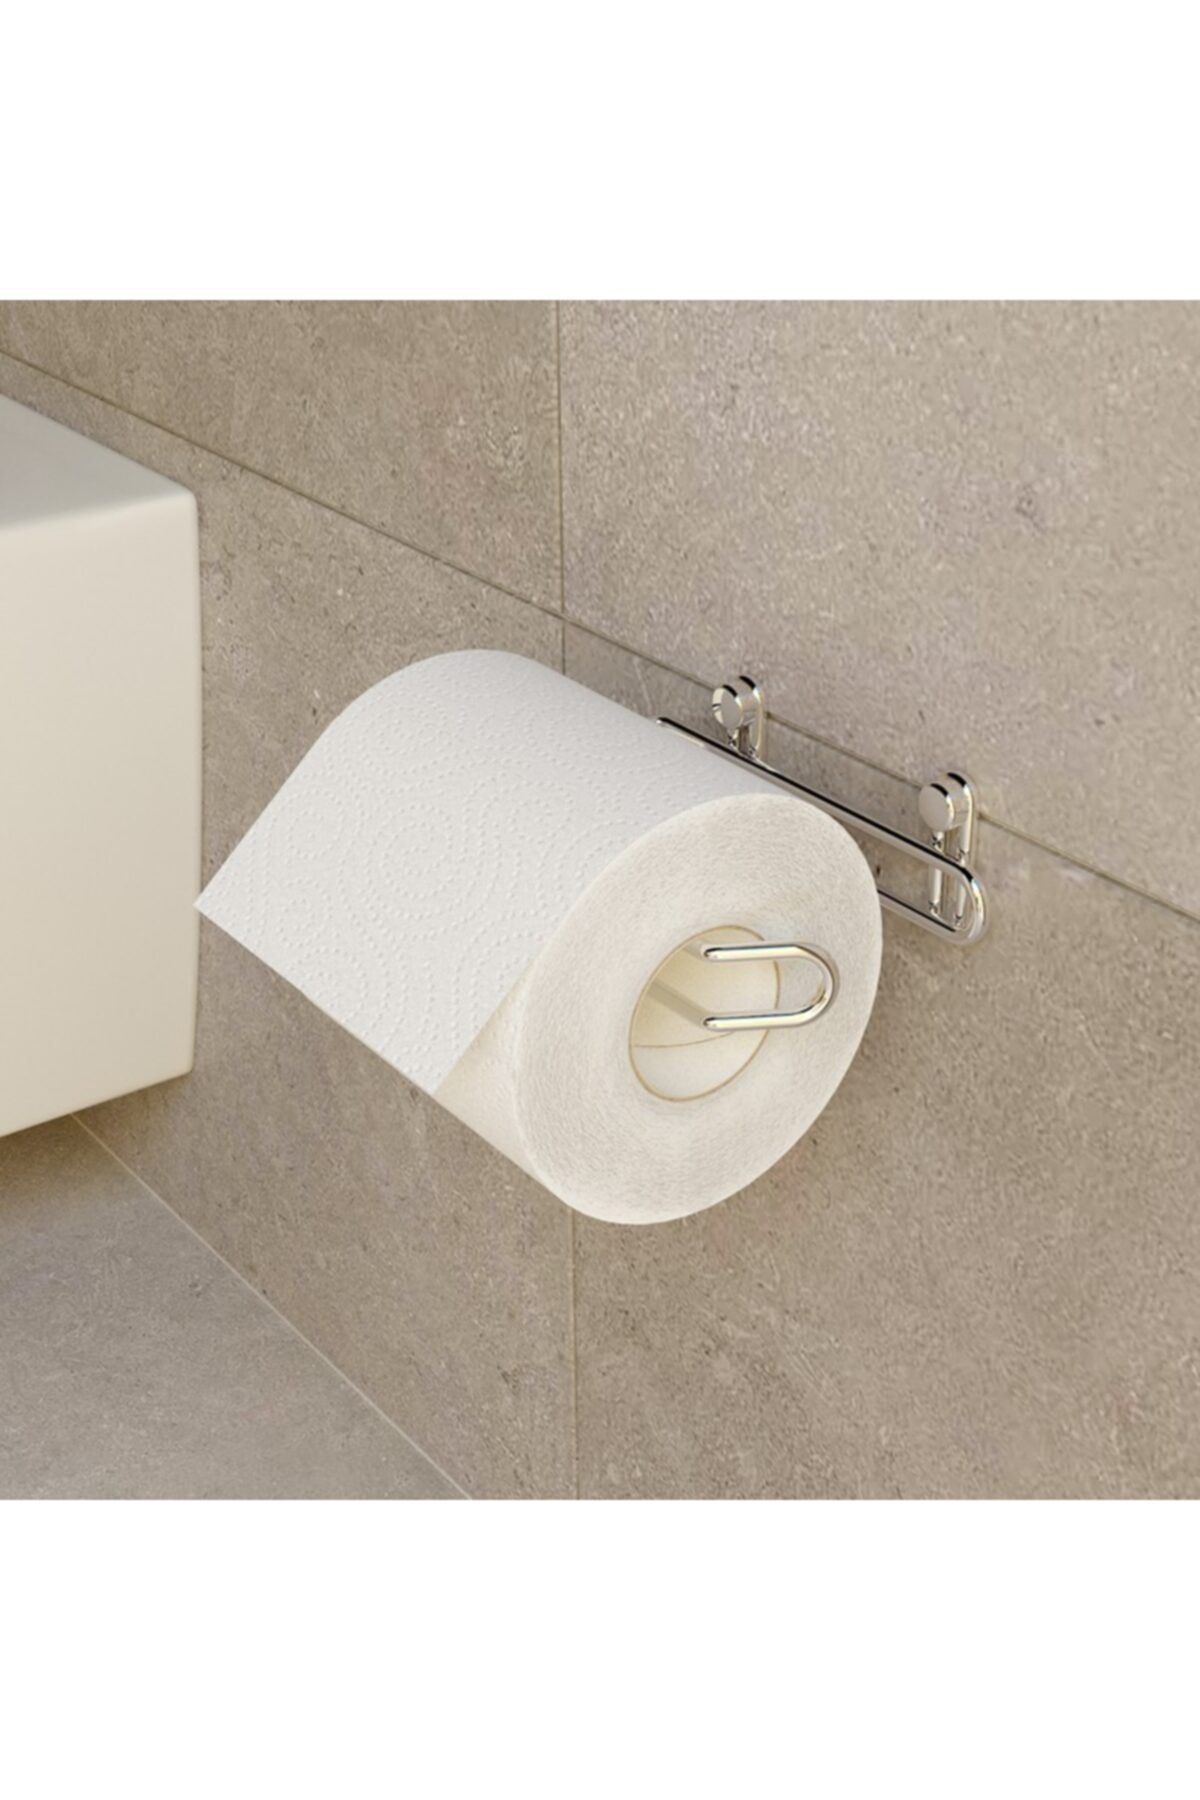 Evistro Banyo Tuvalet Kağıtlığı